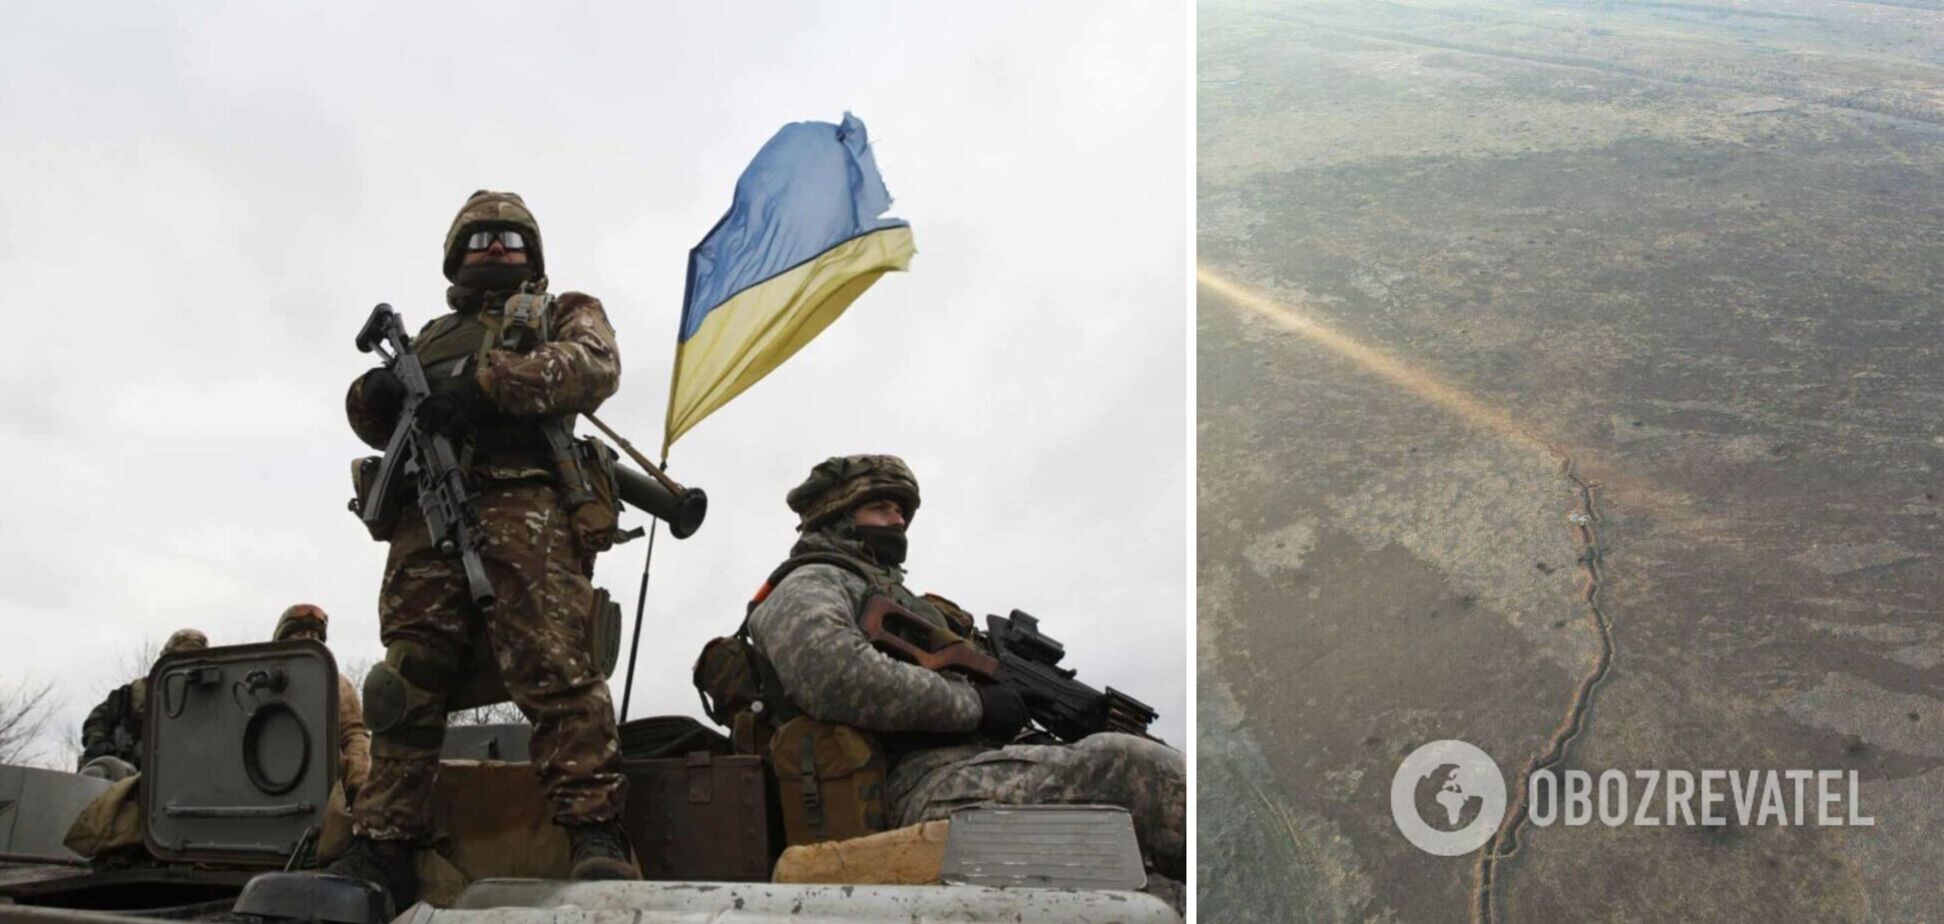 Украинские артиллеристы накрыли огнем 'вагнеровцев' на Донбассе. Фото 18+